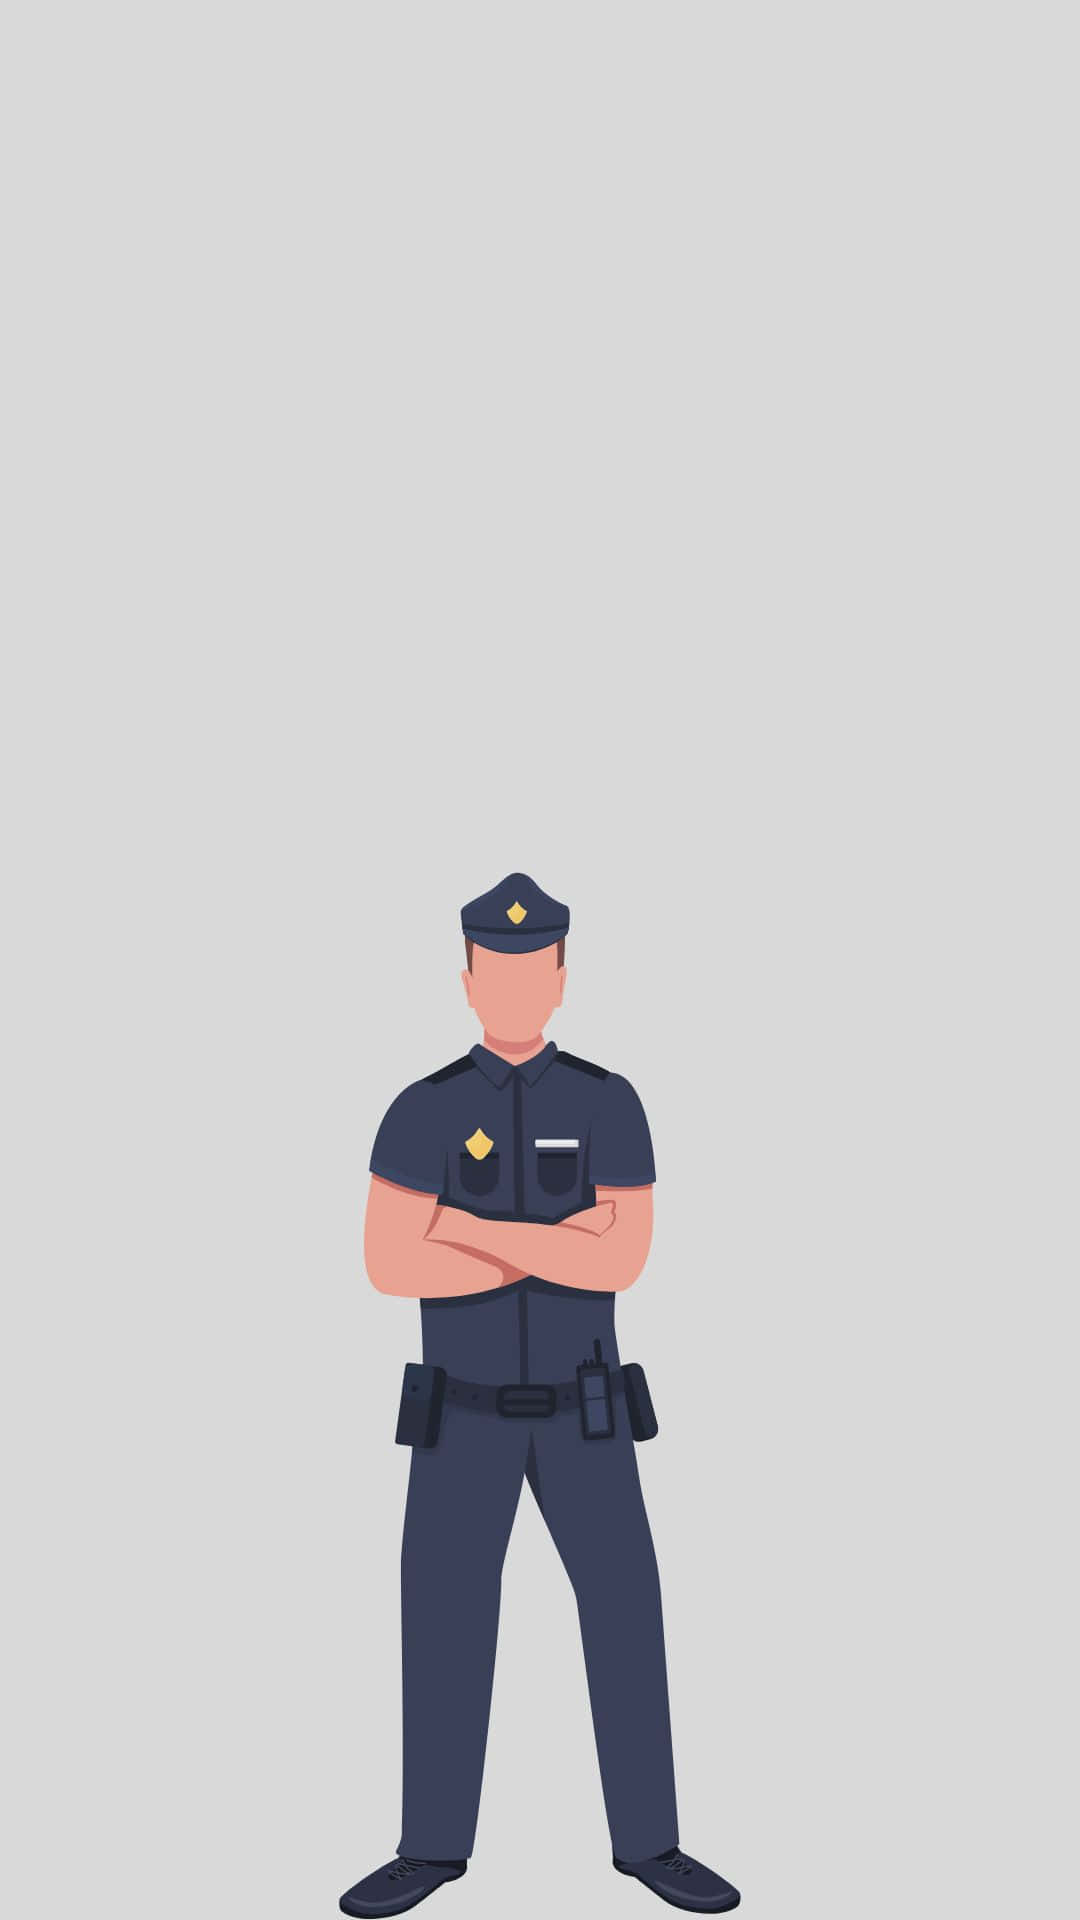 Obrade Arte Digital De Um Policial Com Os Braços Cruzados. Papel de Parede